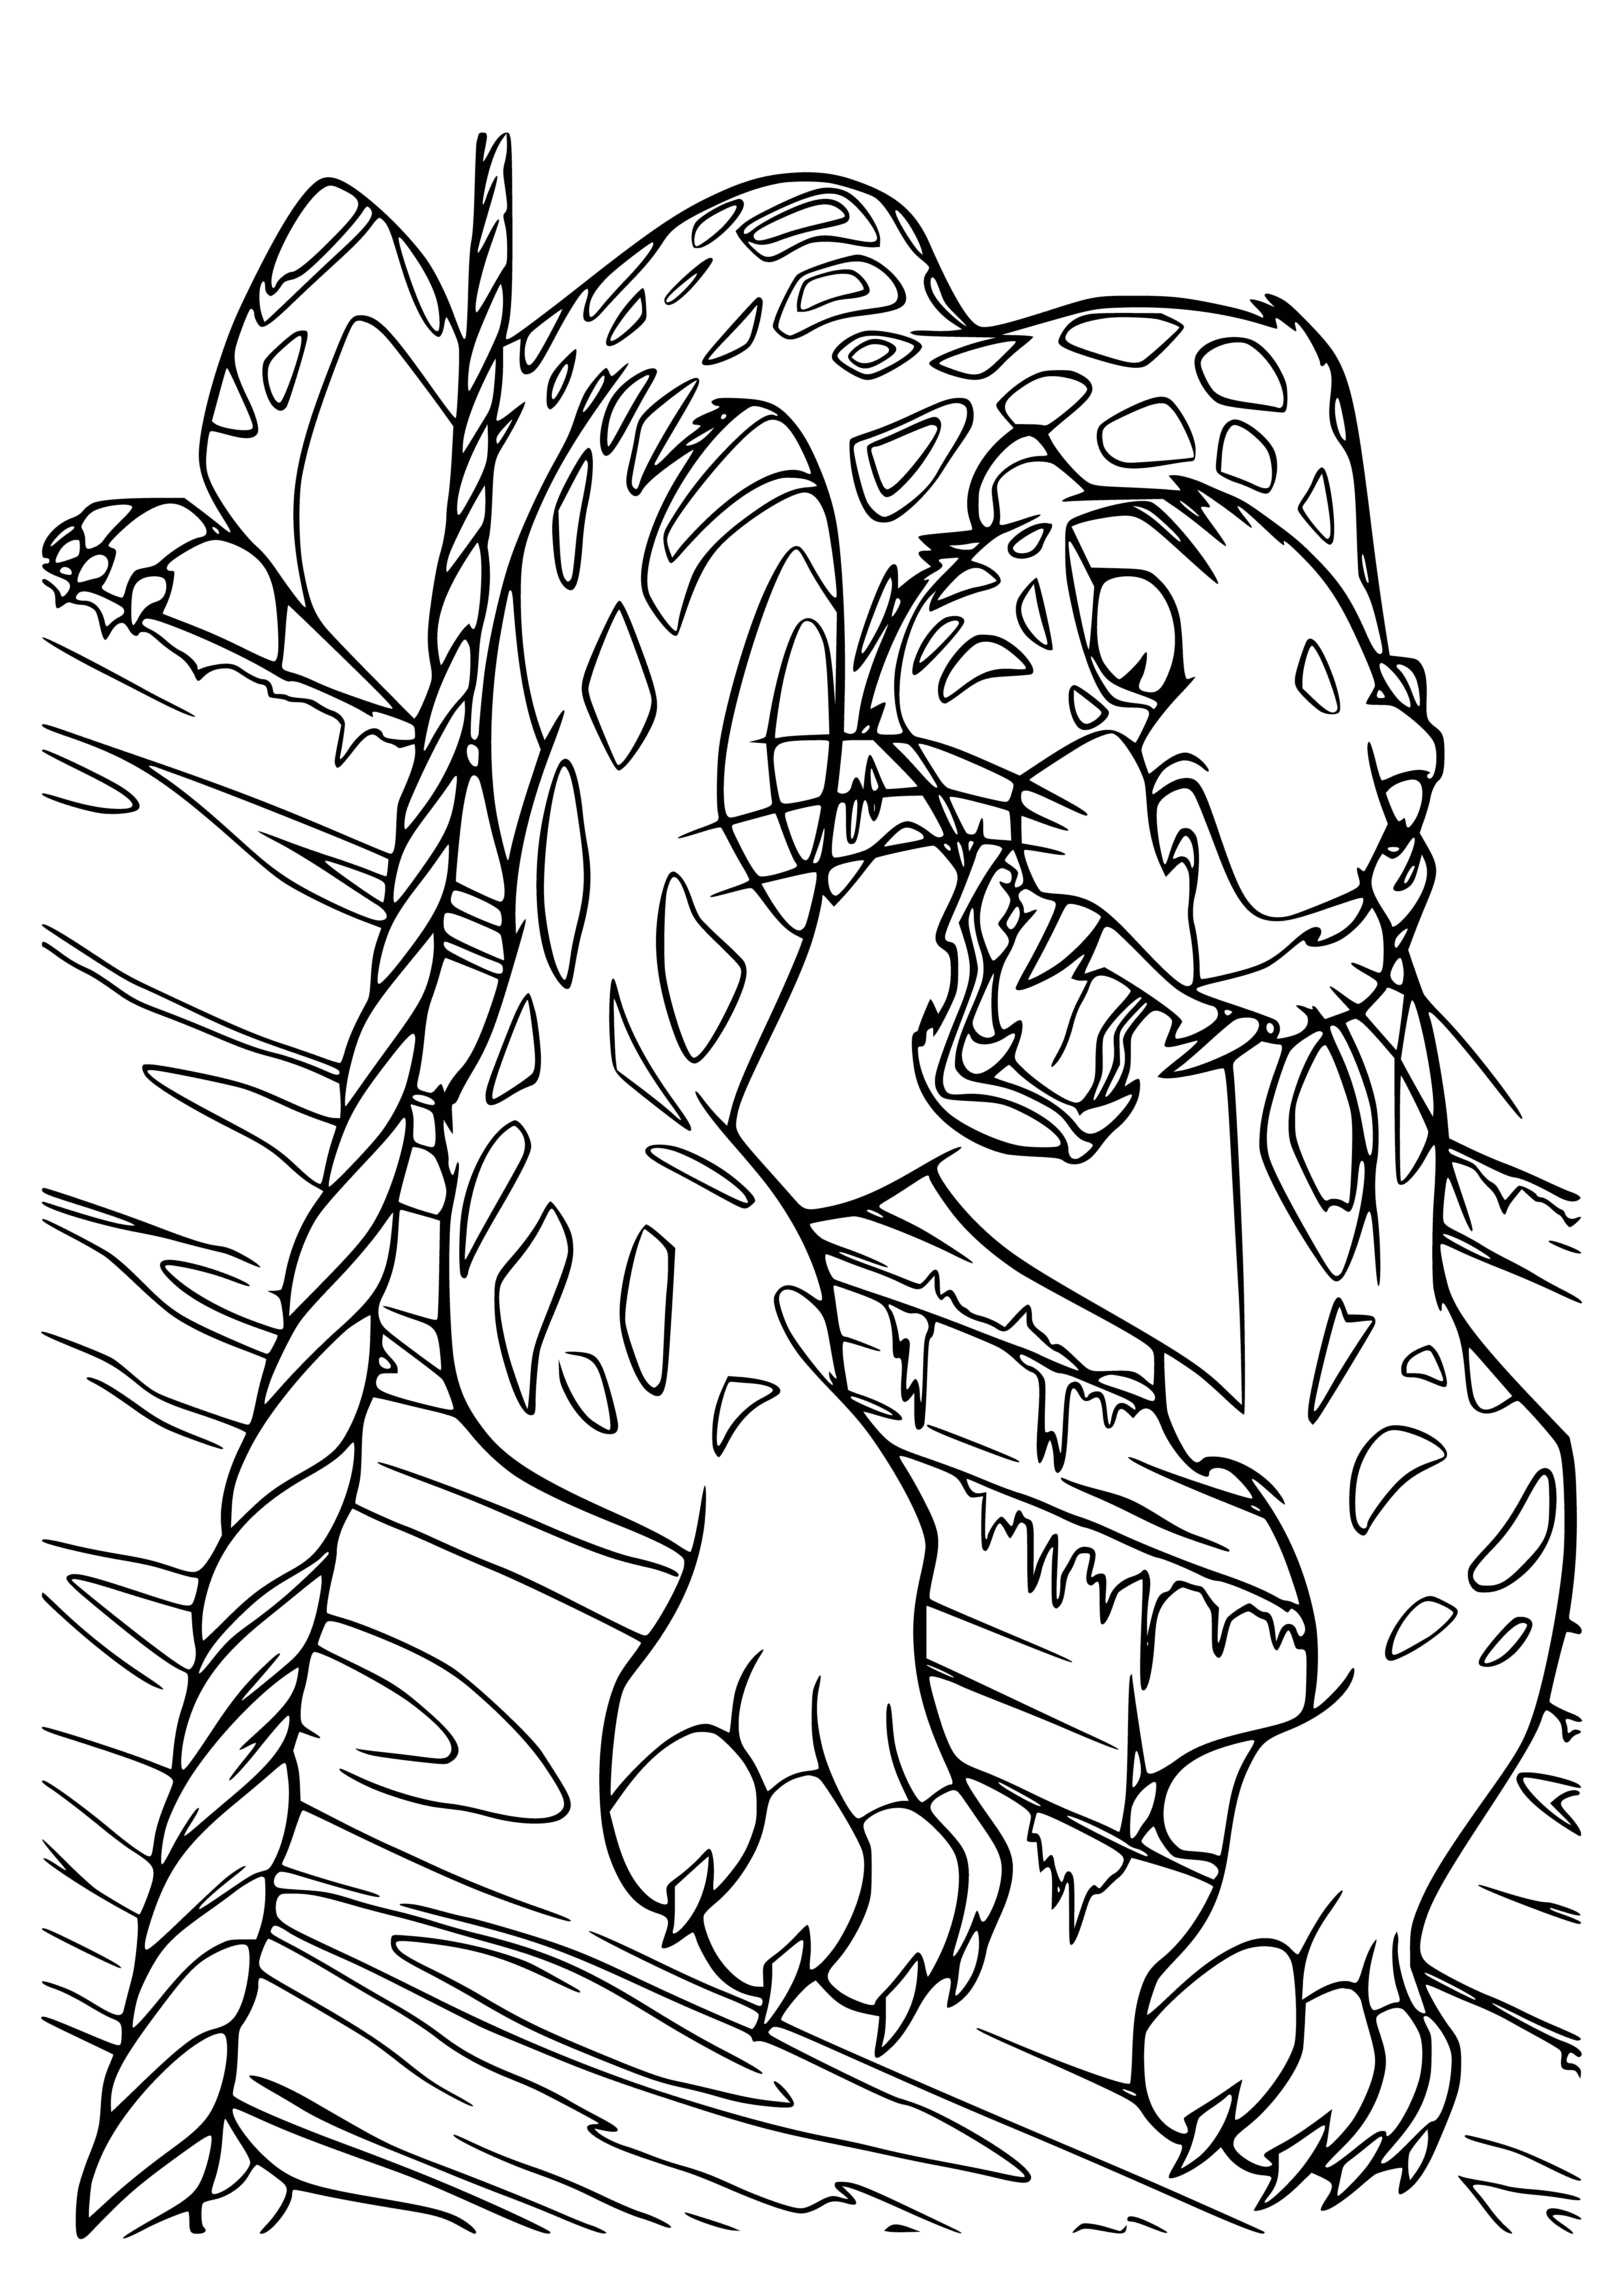 Leopard Sabora coloring page